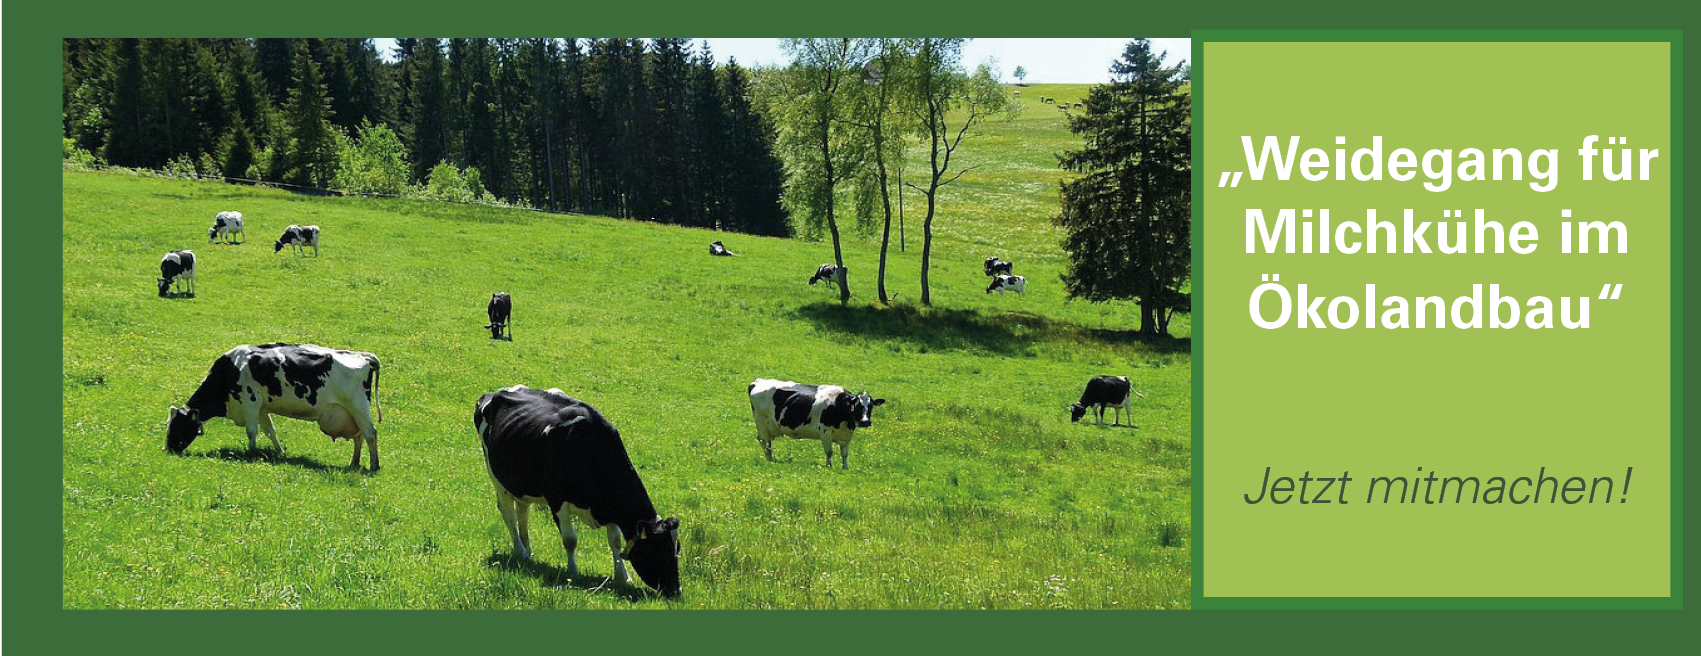 Kühe auf Weide, im Bildhintergrund hügelige Landschaft und Bäume